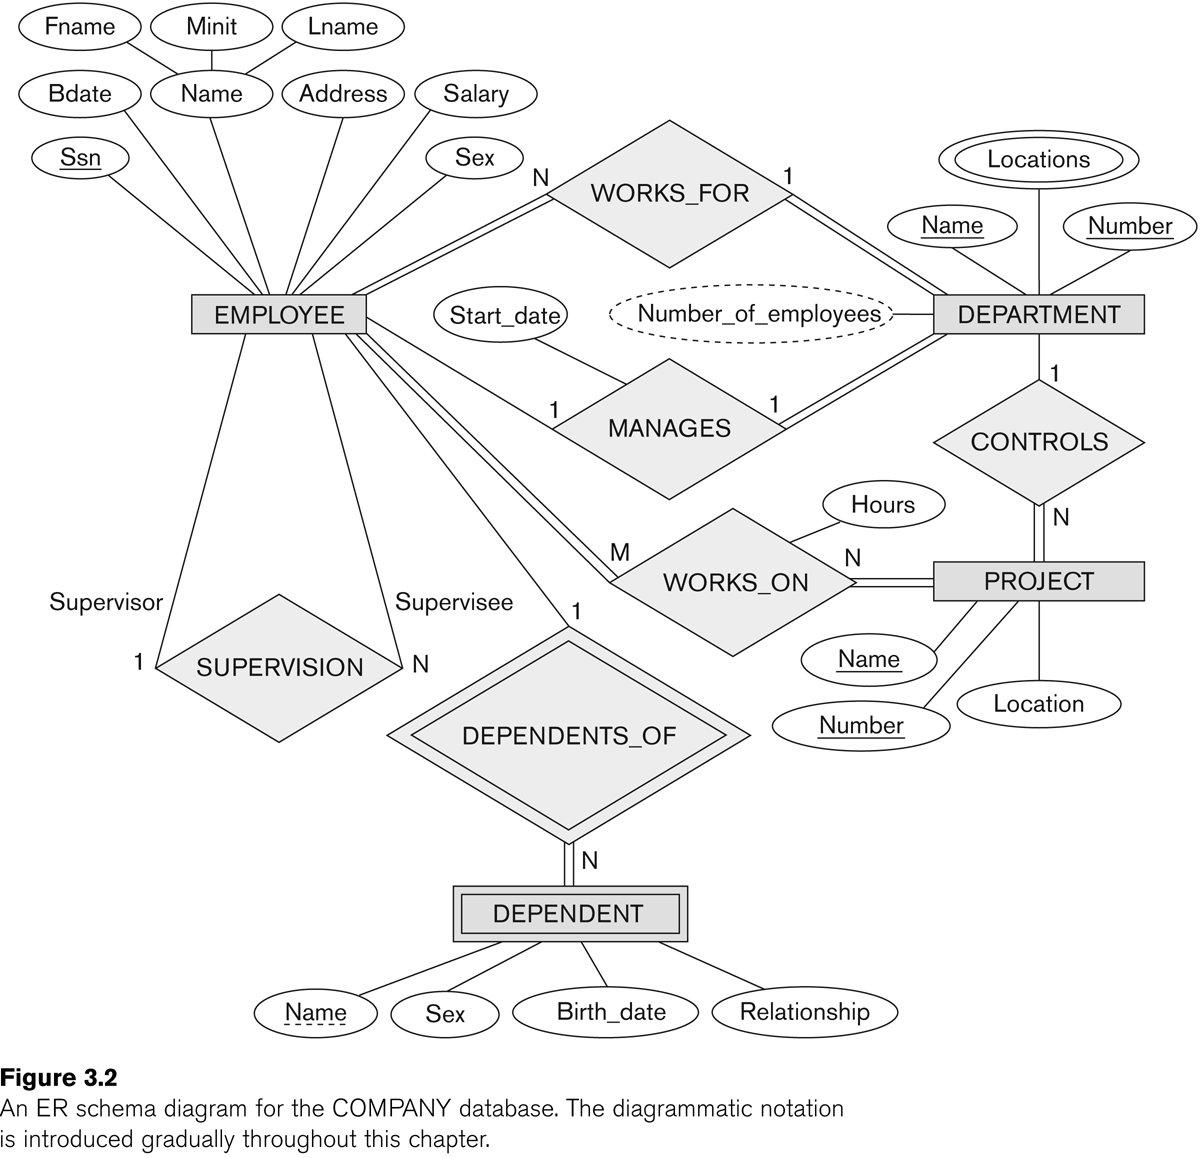 E-R diagram for COMPANY database